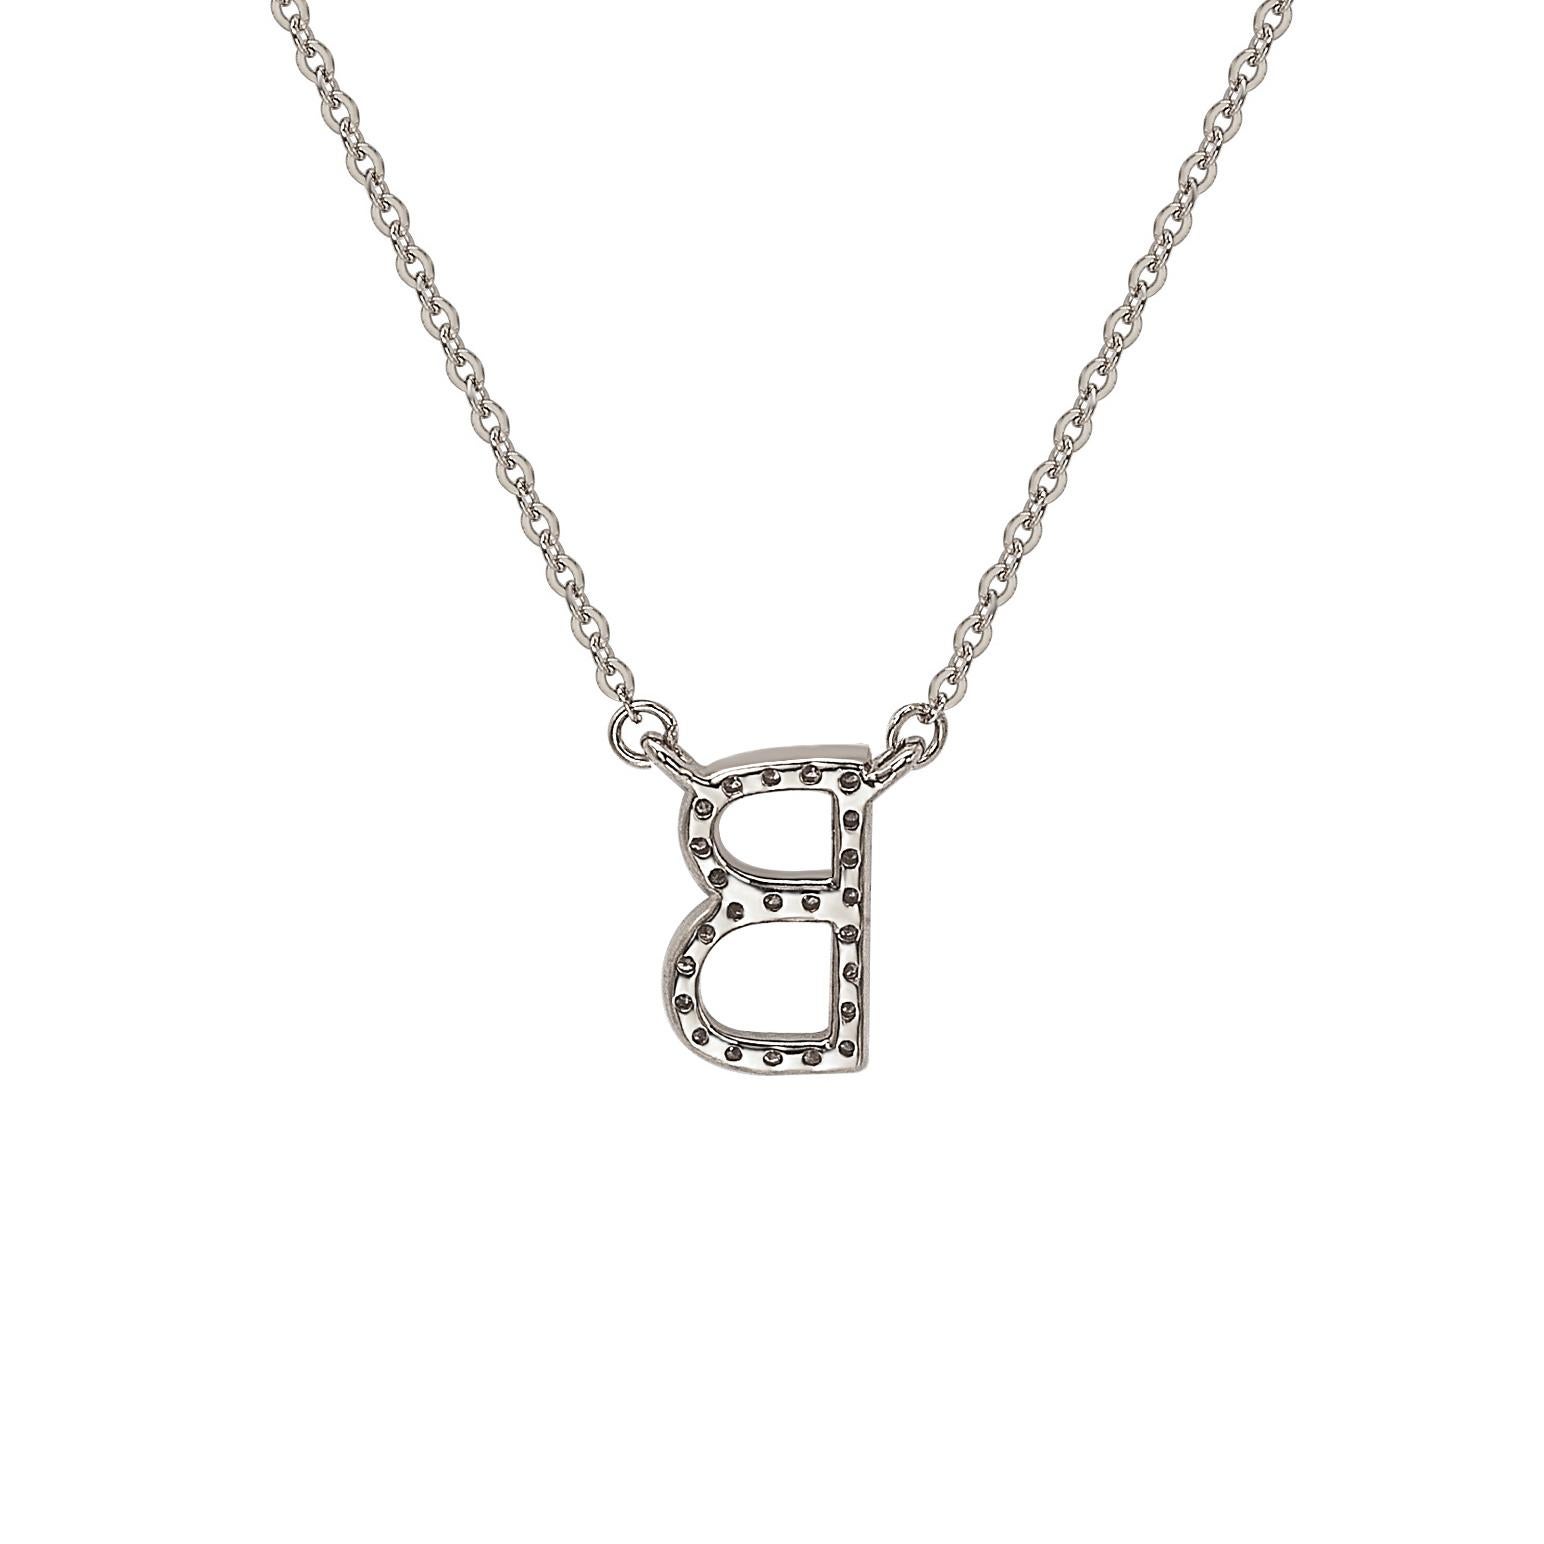 Cet époustouflant collier lettre personnalisé Suzy Levian est composé de diamants naturels, sertis à la main dans de l'or blanc 14 carats. C'est le cadeau individualisé idéal pour faire savoir à une personne spéciale que vous pensez à elle. Chaque